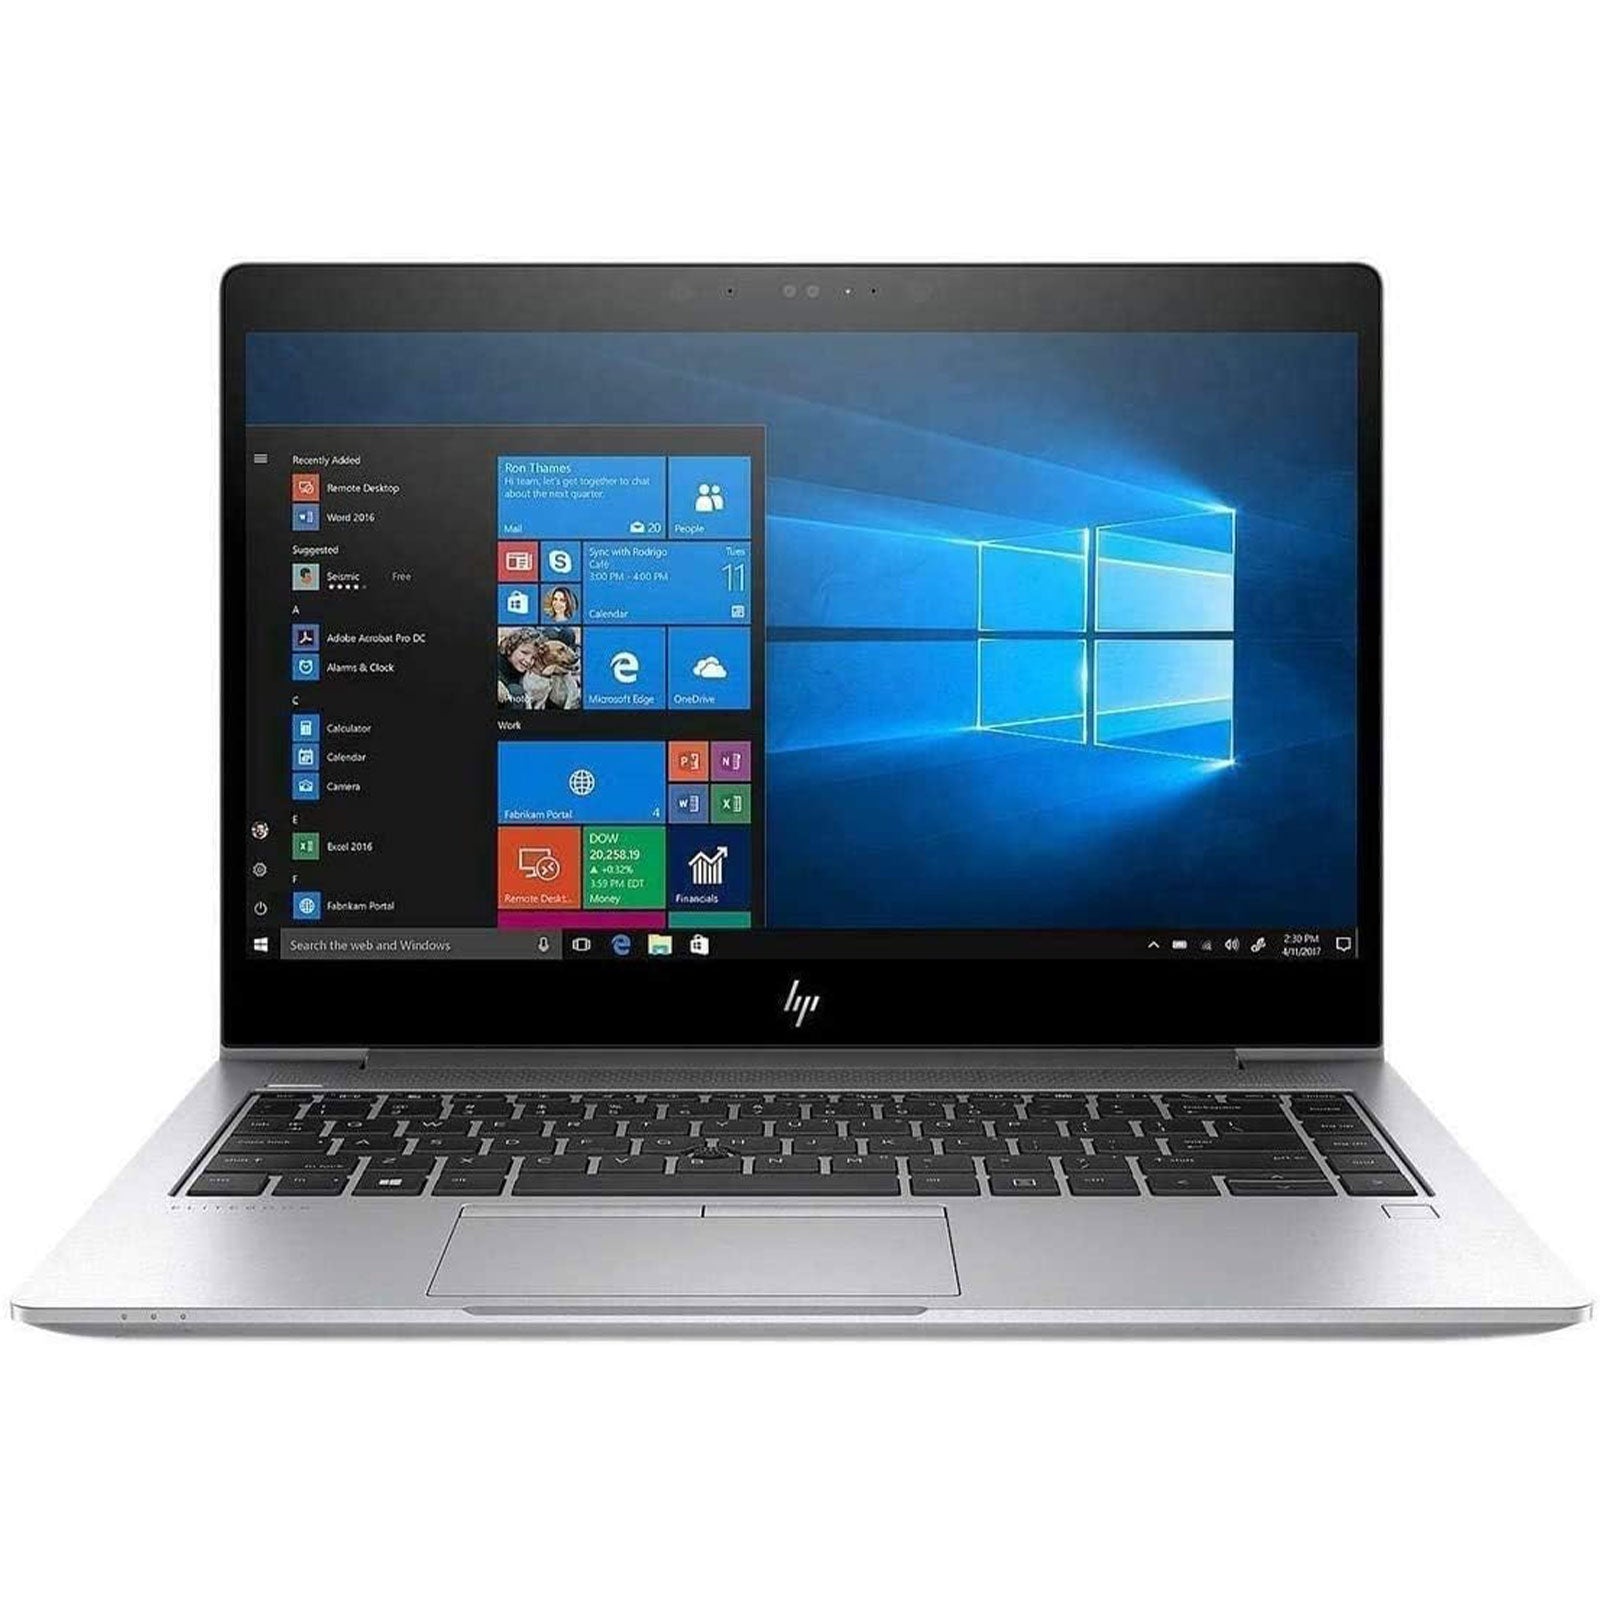 Notebook ricondizionato - Grado A - HP EliteBook 840 G5 Notebook 14" Intel i5-8250U Ram 16Gb SSD 480Gb Freedos (Ricondizionato Grado A) - Disponibile in 2-4 giorni lavorativi